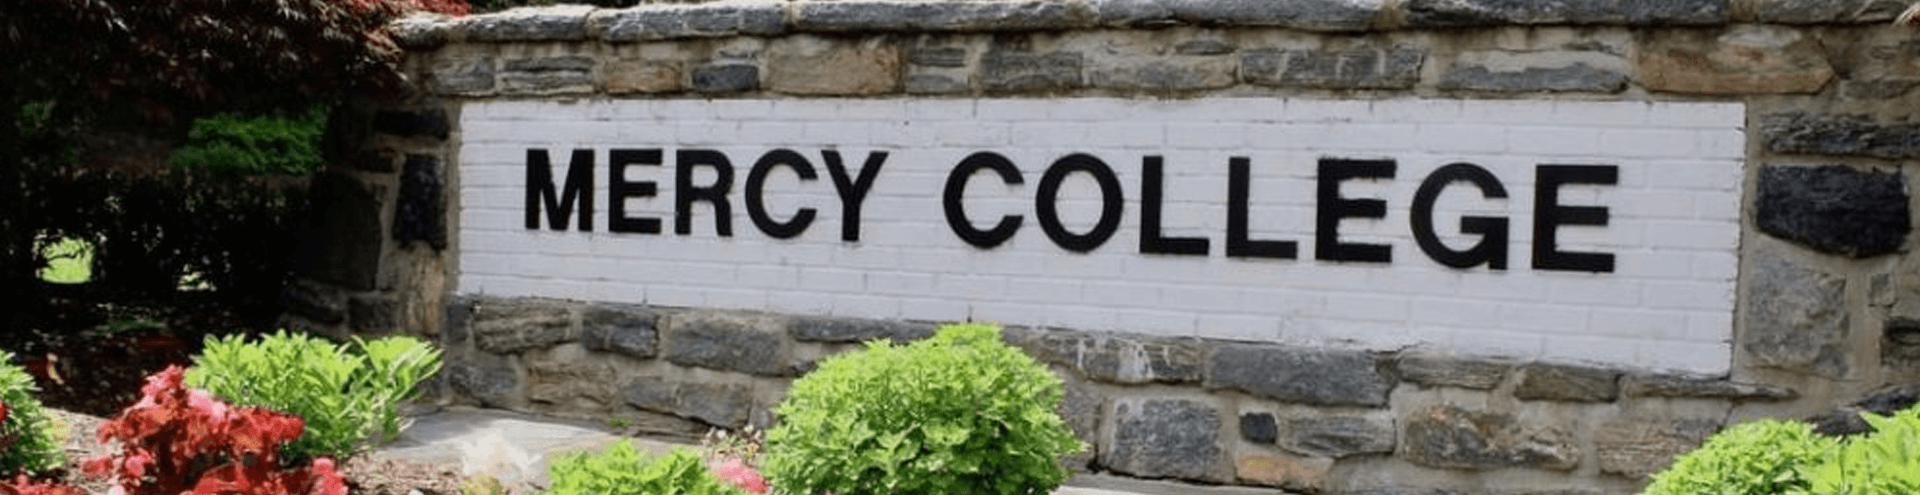 Mercy College Bookstore Promo Code